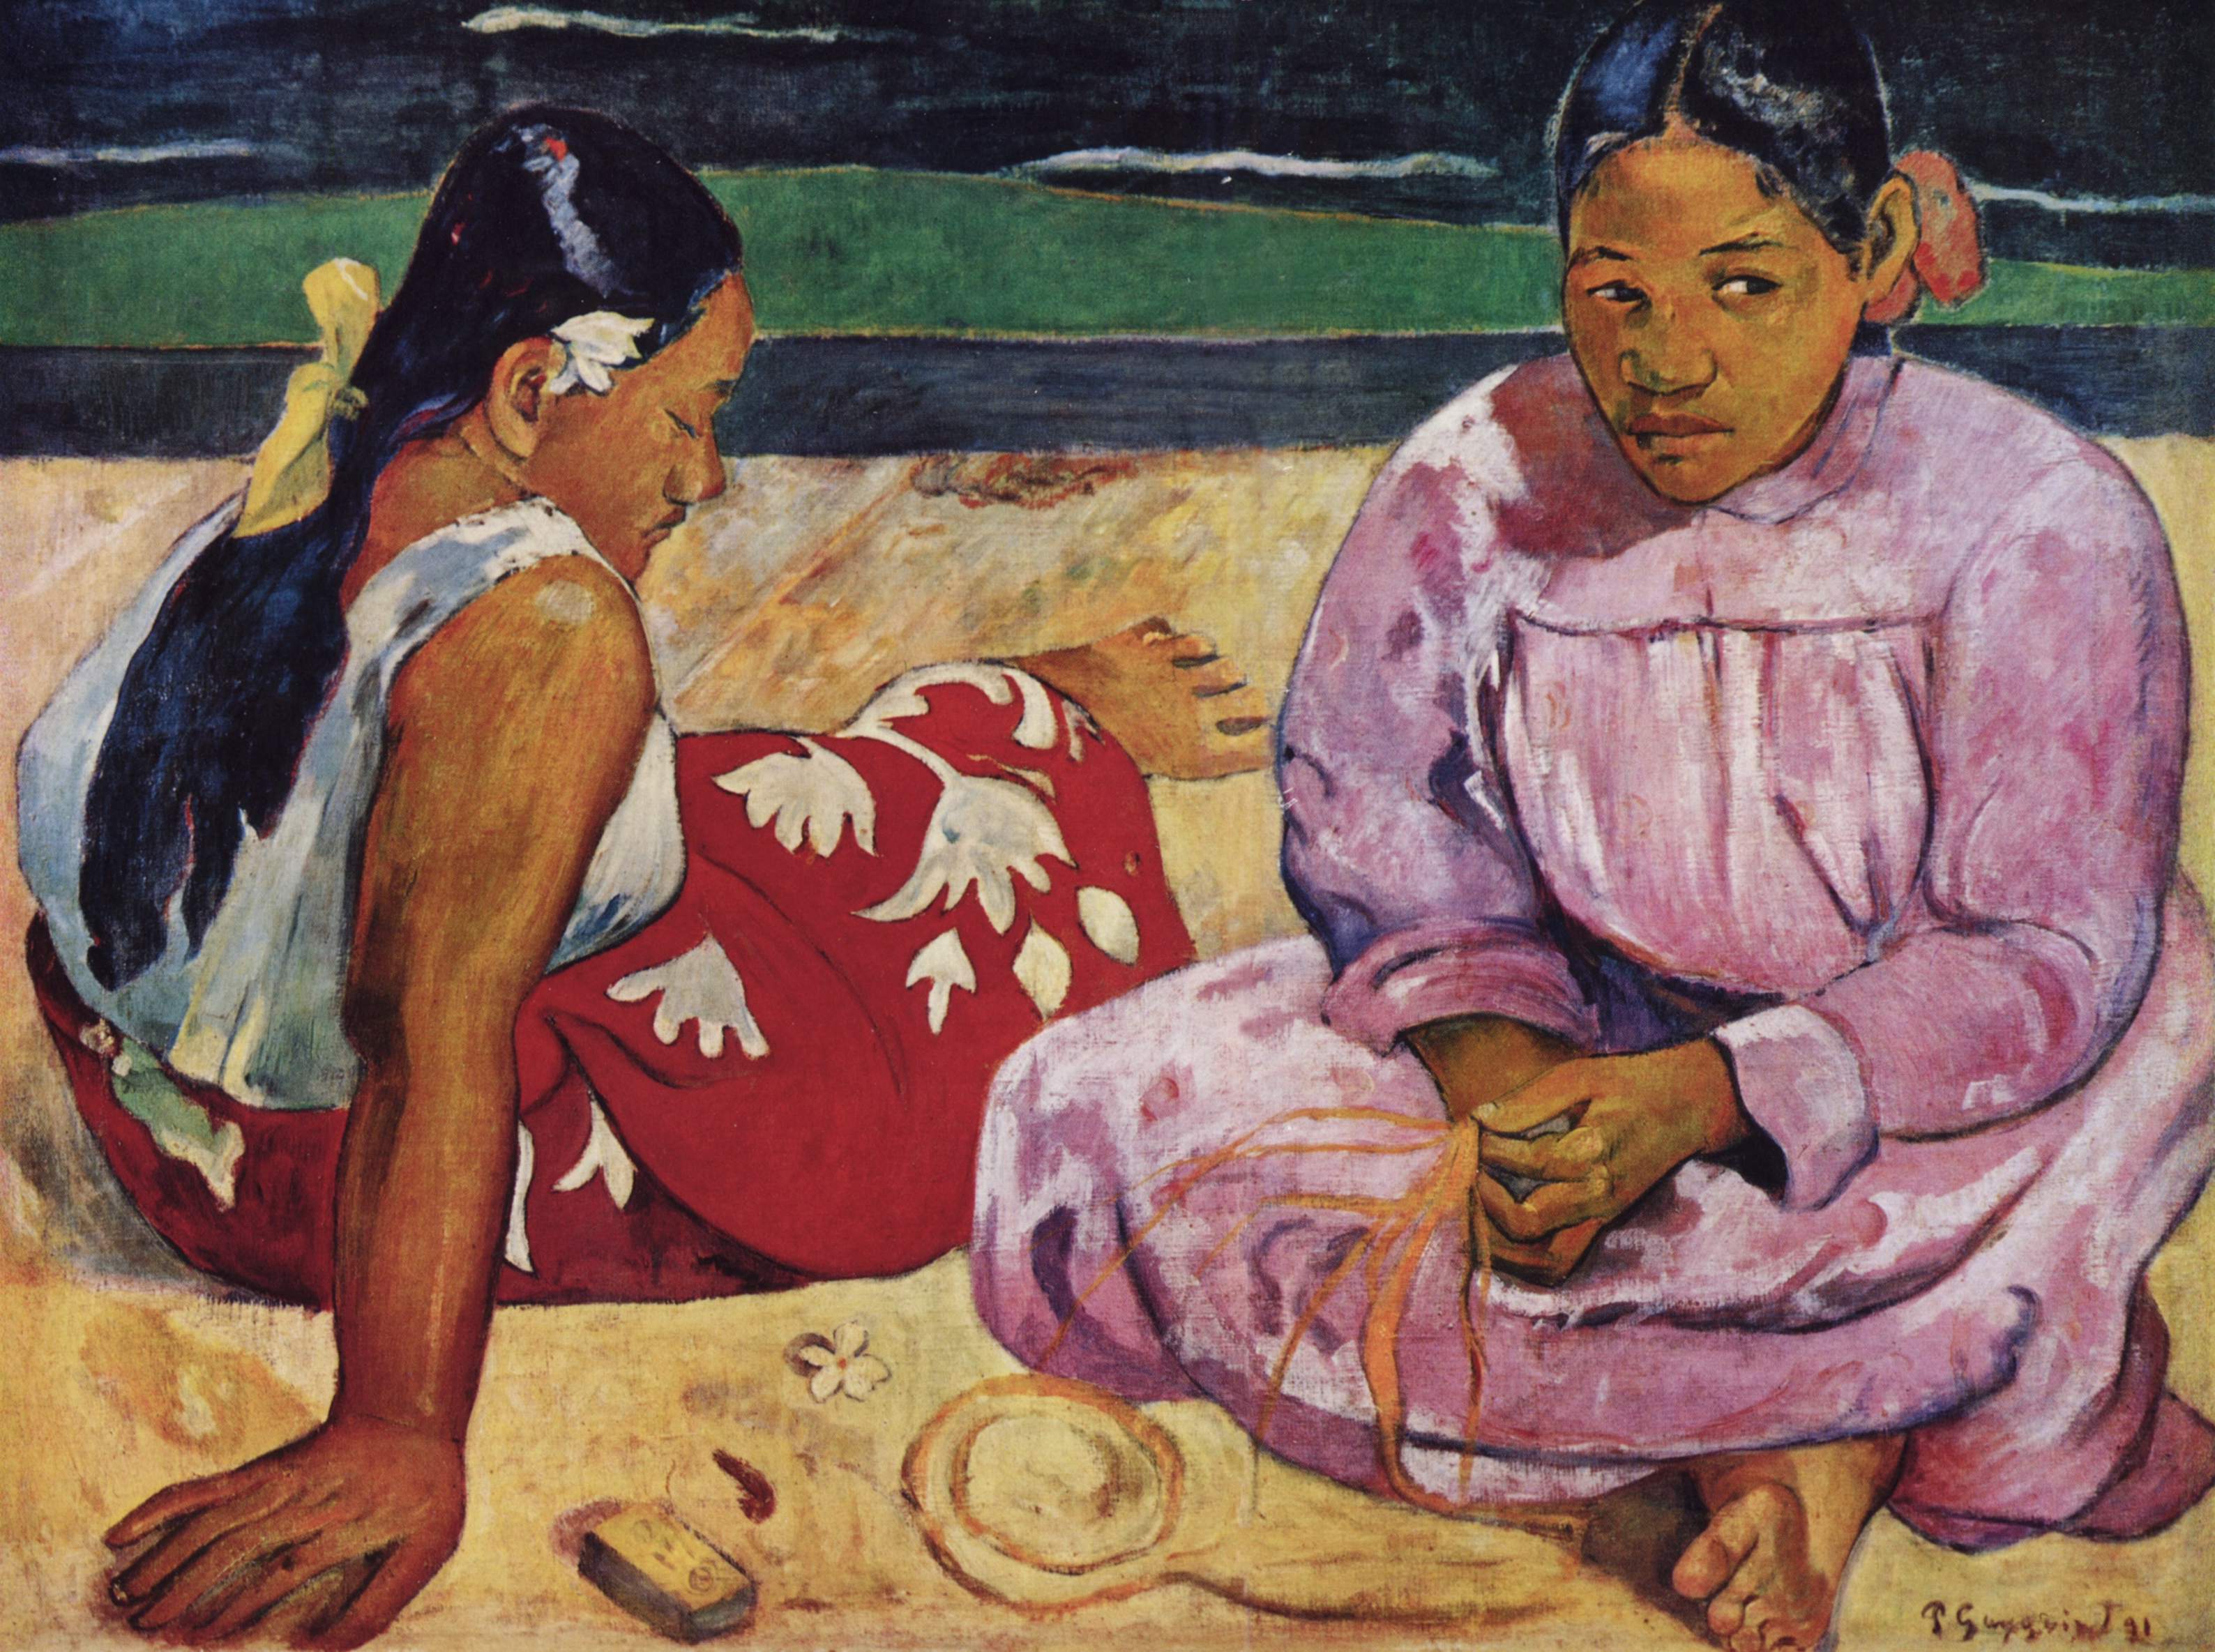 Mujeres tahitianas en la playa by Paul Gauguin - 1891 Musée d'Orsay